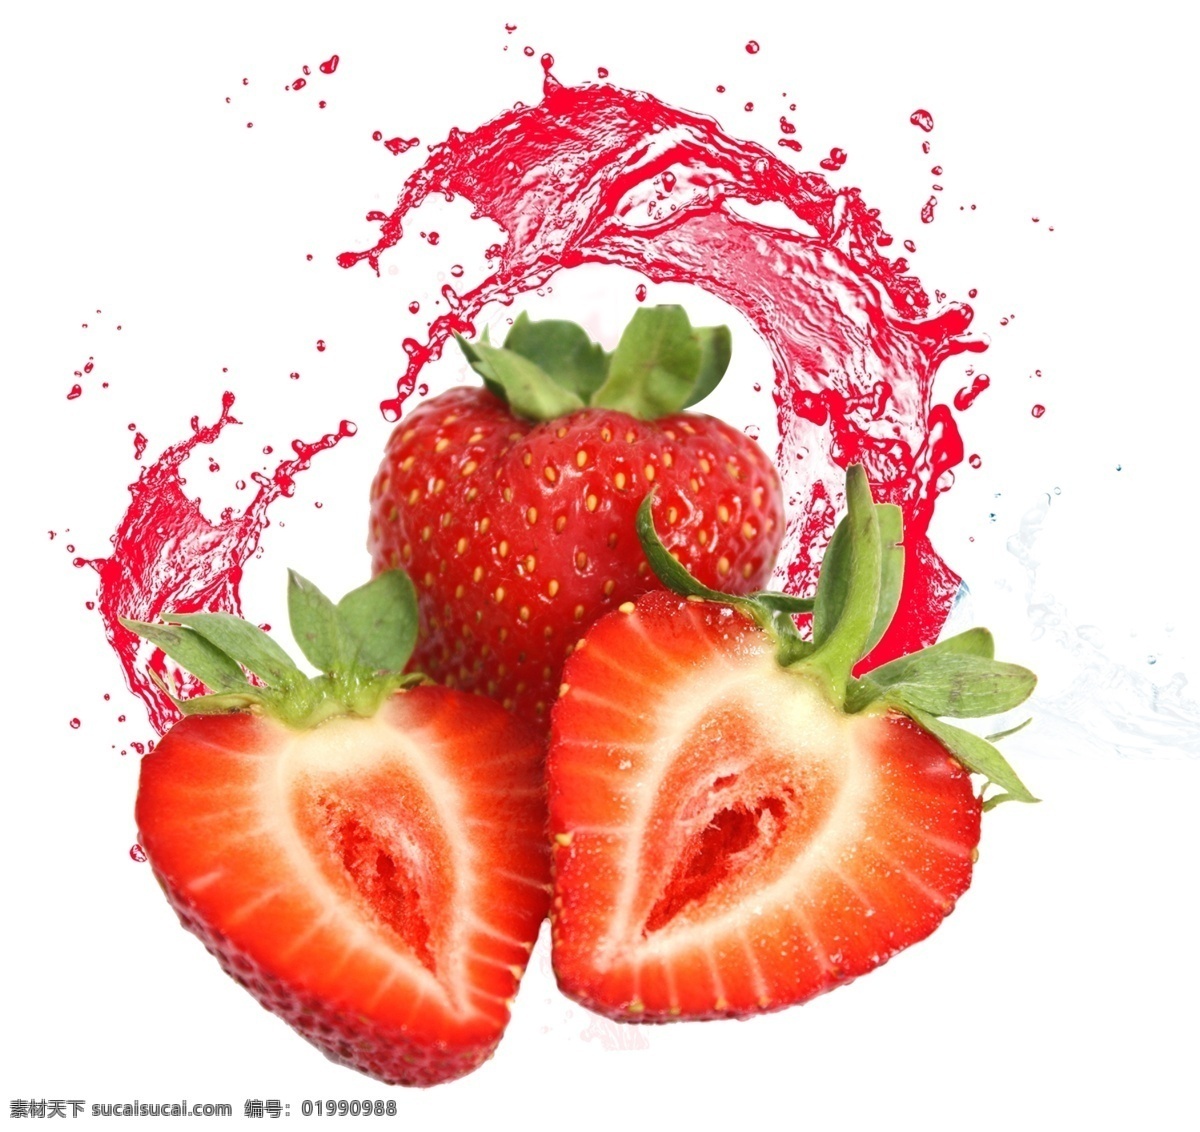 水果 水果盘 水果拼盘 草莓汁 溅射 素材图